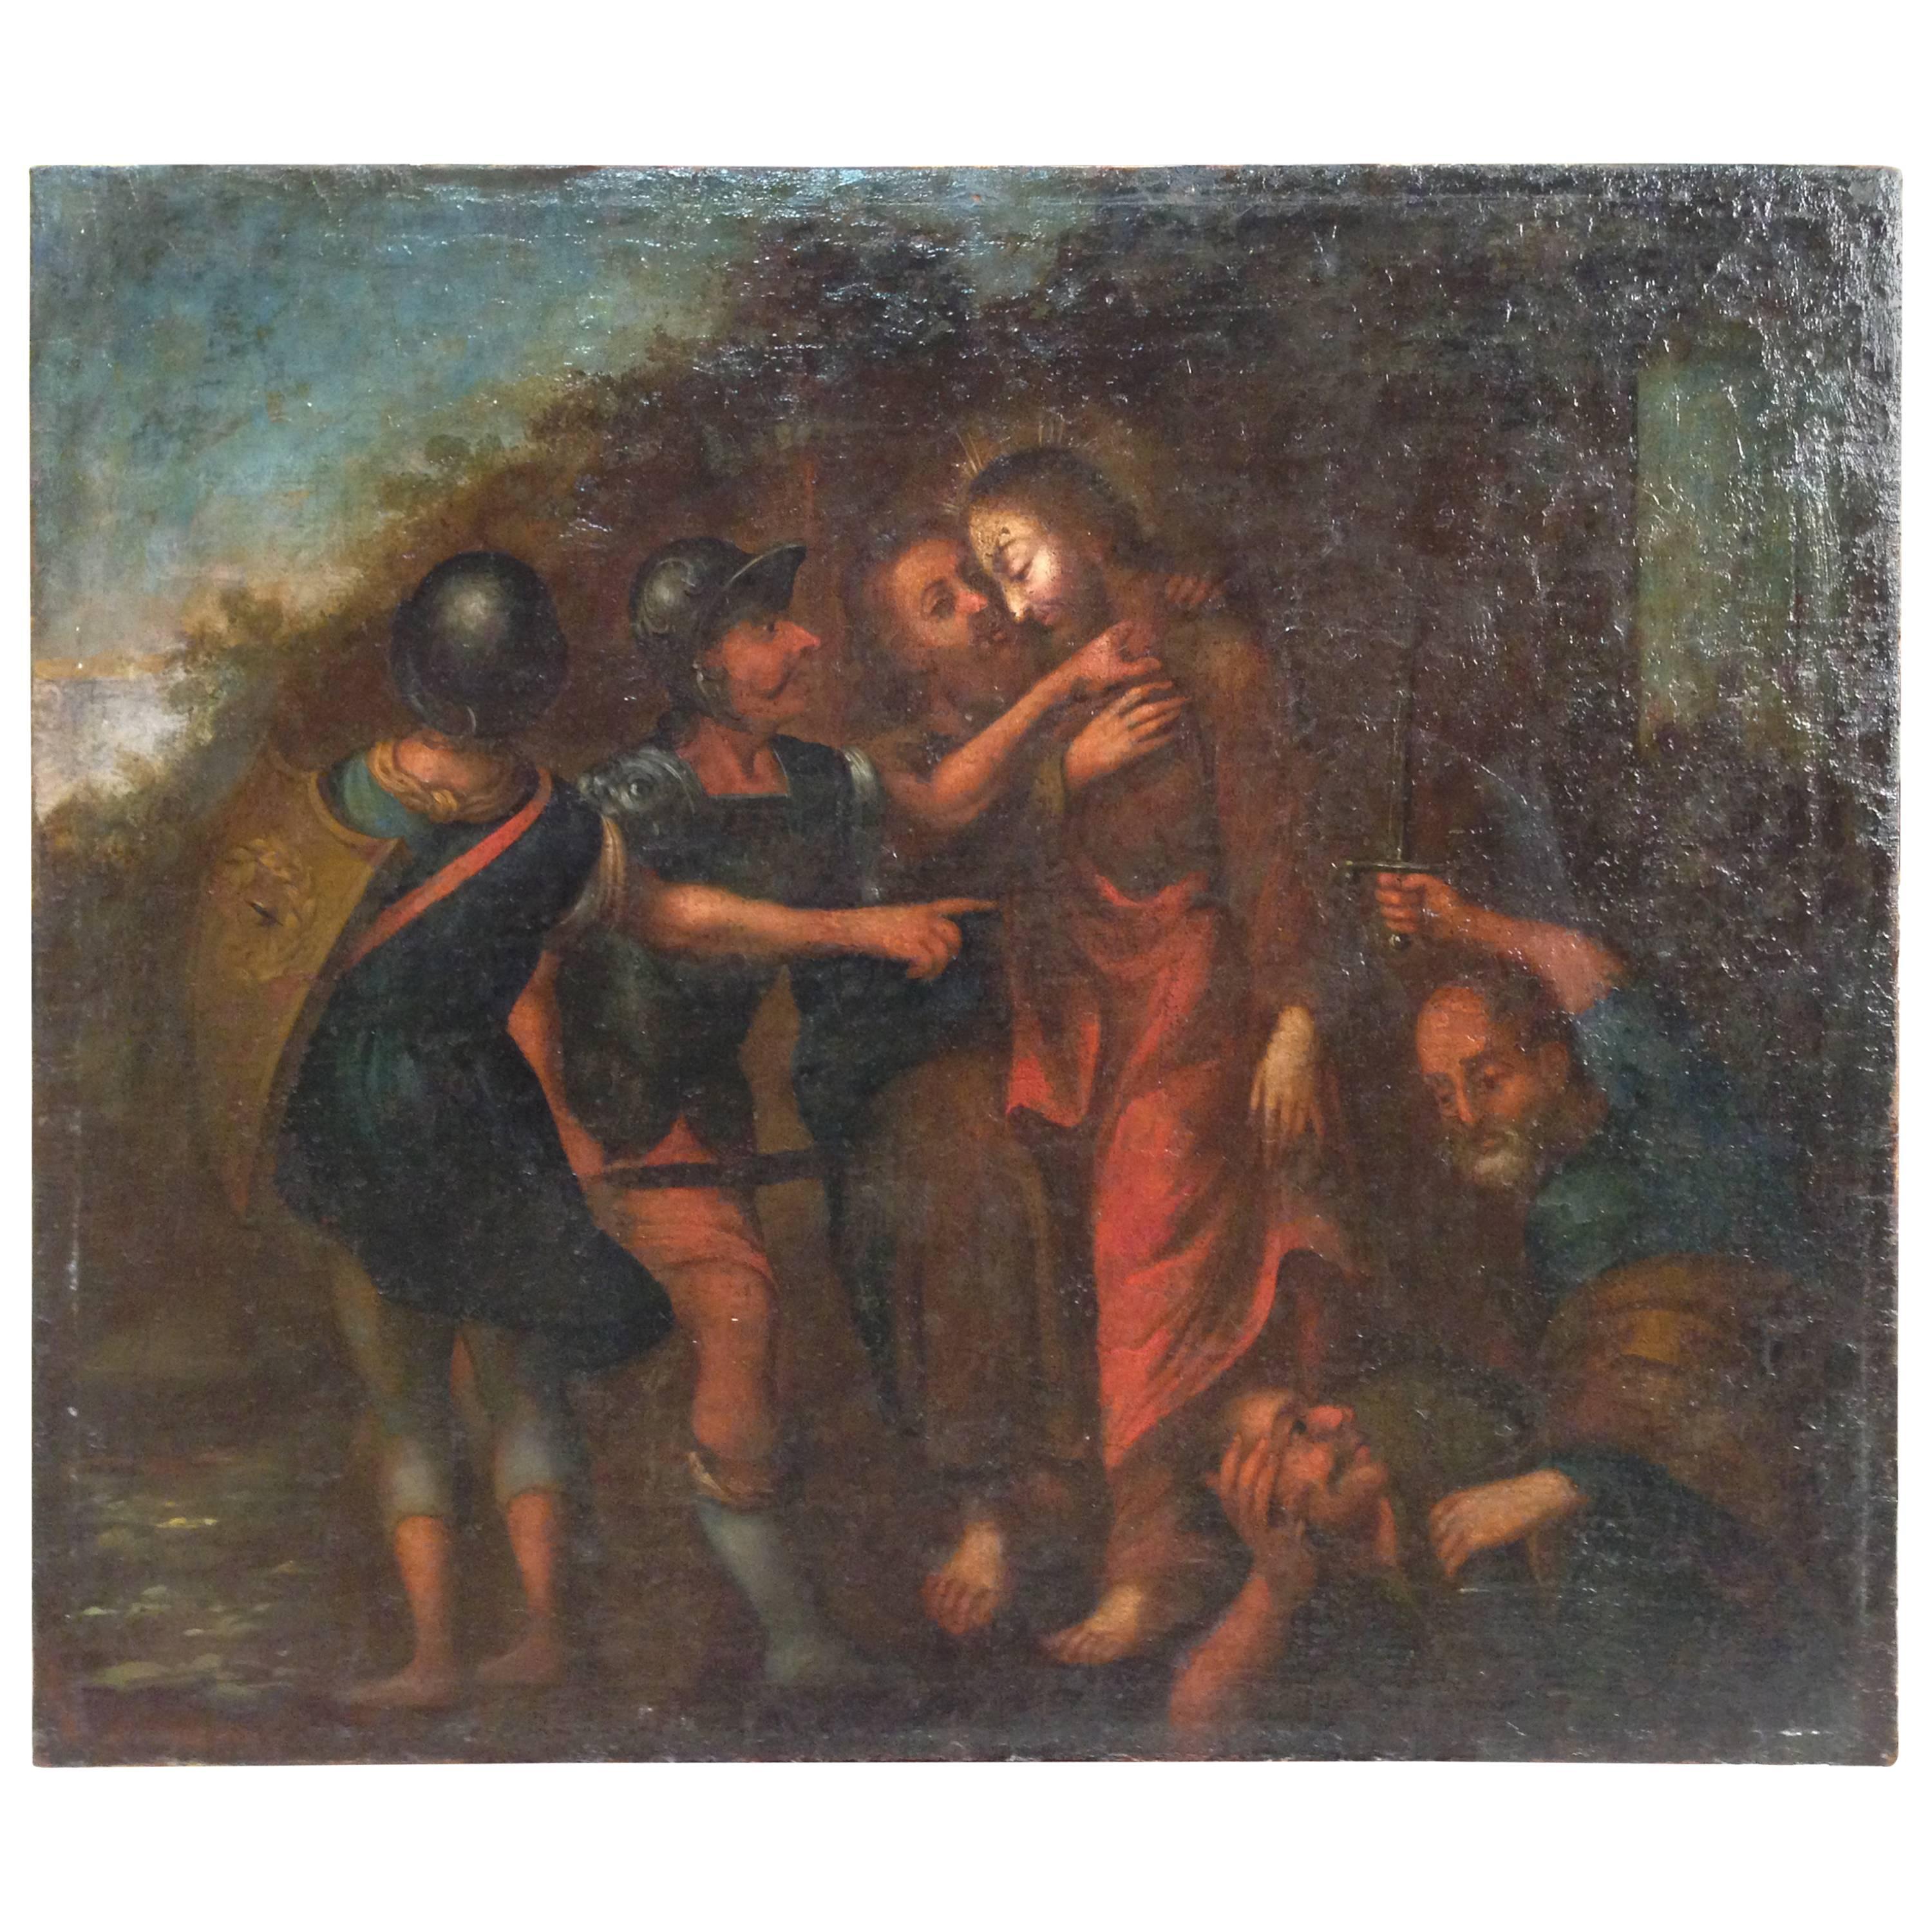 18th Century Painting "Kiss of Judas"